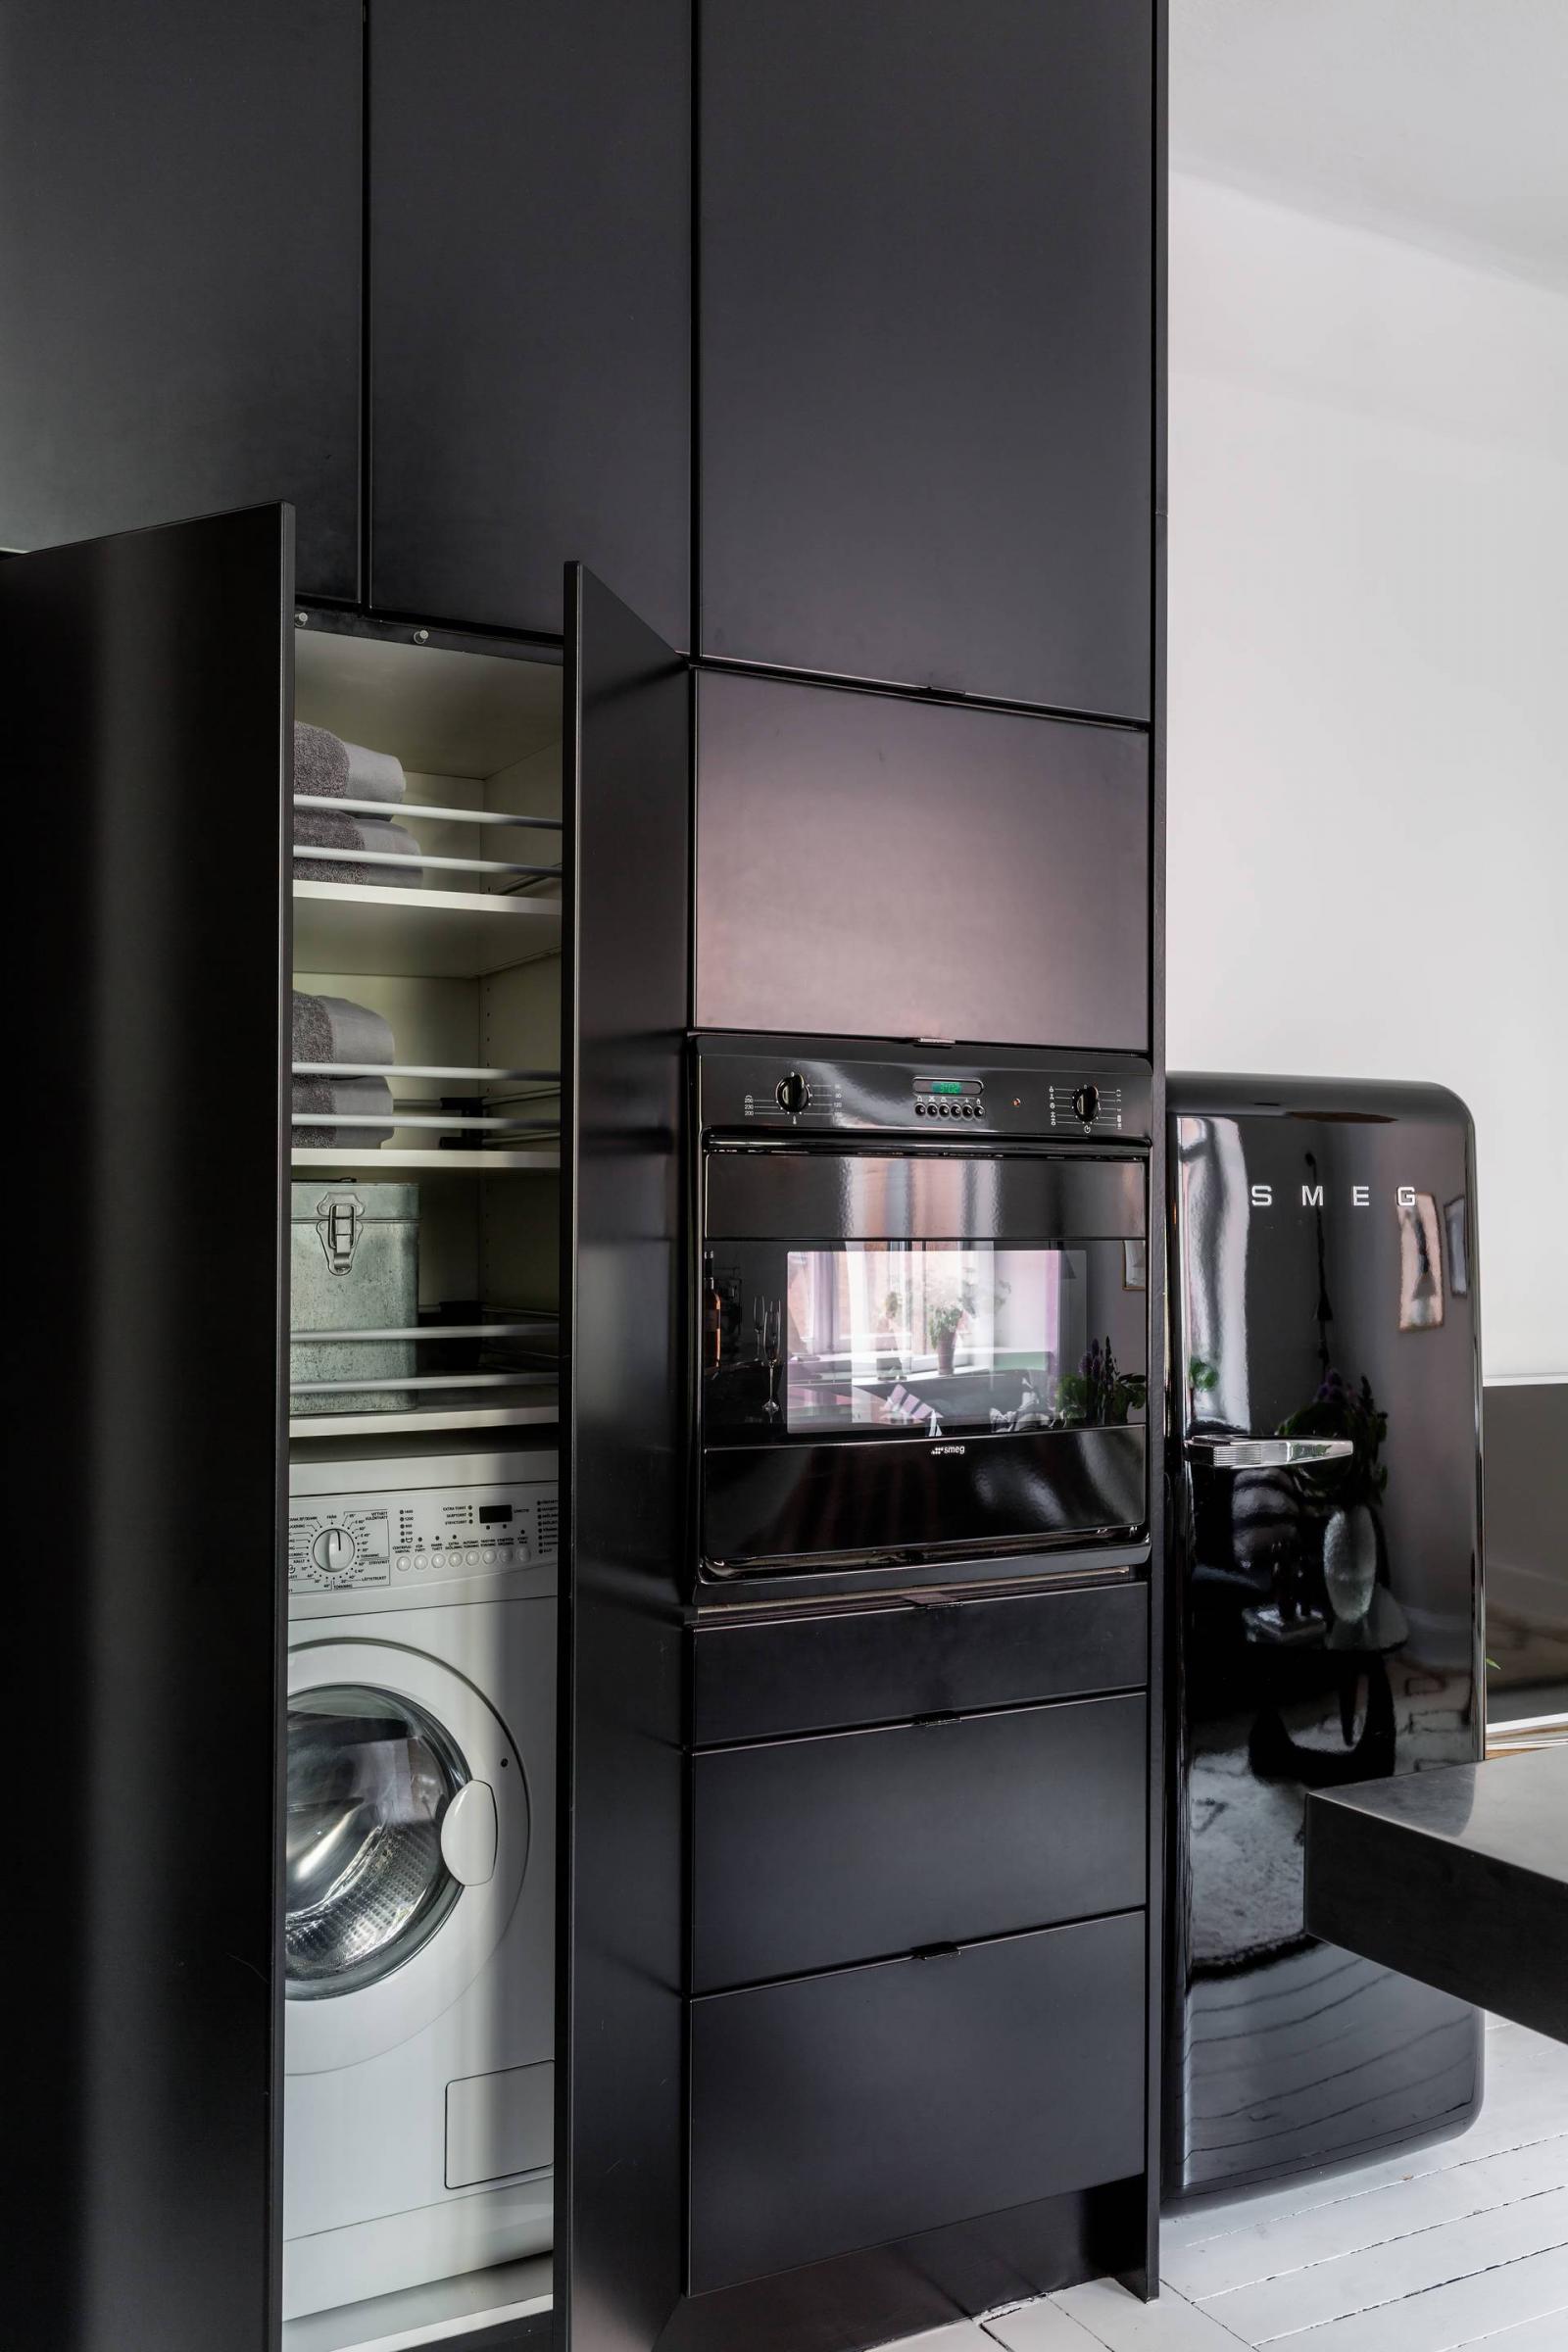 Hình ảnh cận cảnh hệ tủ bếp màu đen sang trọng, cá tính, nơi đặt máy giặt, tủ lạnh